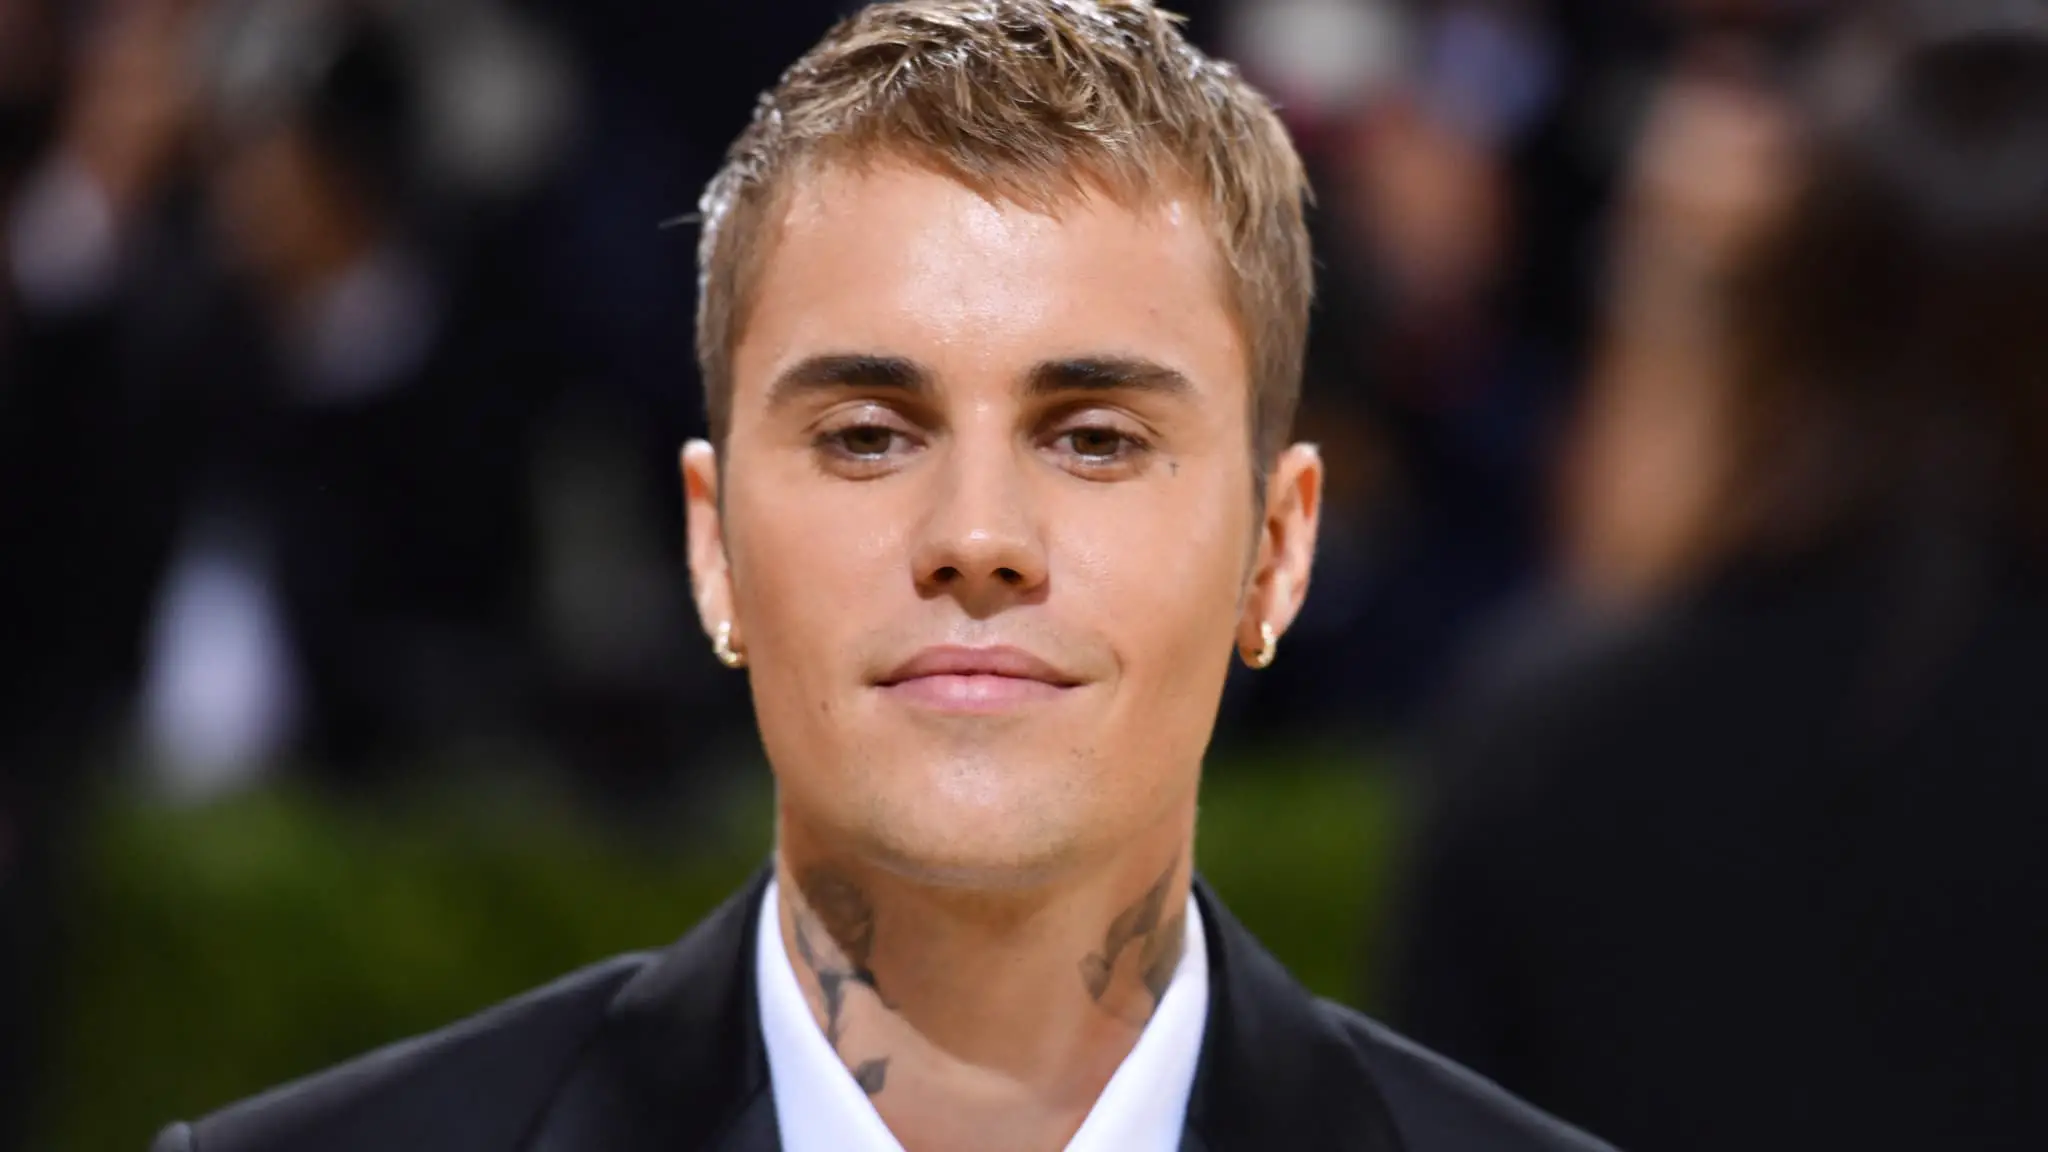 Le visage paralysé, Justin Bieber annule plusieurs concerts